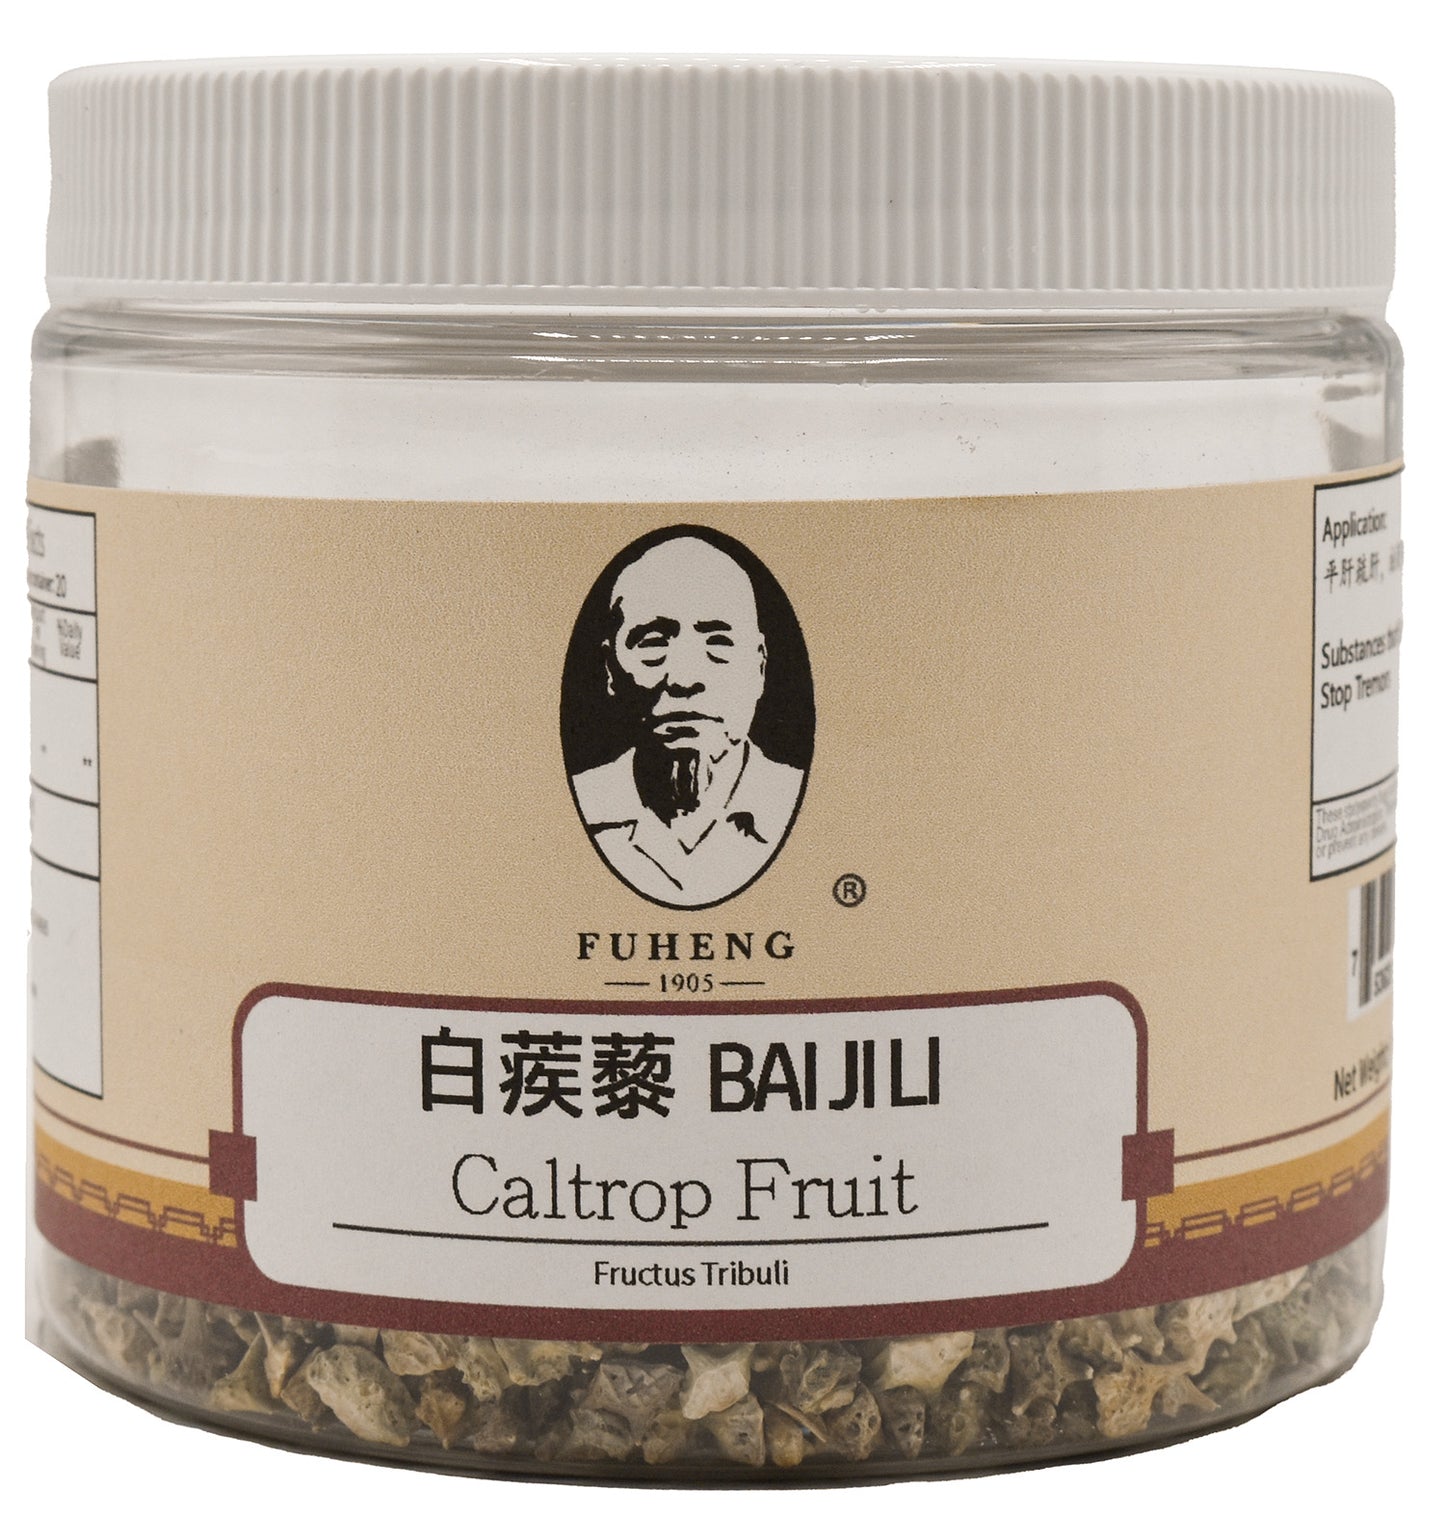 BAI JI LI - 白蒺藜  - Caltrop Fruit - 100g